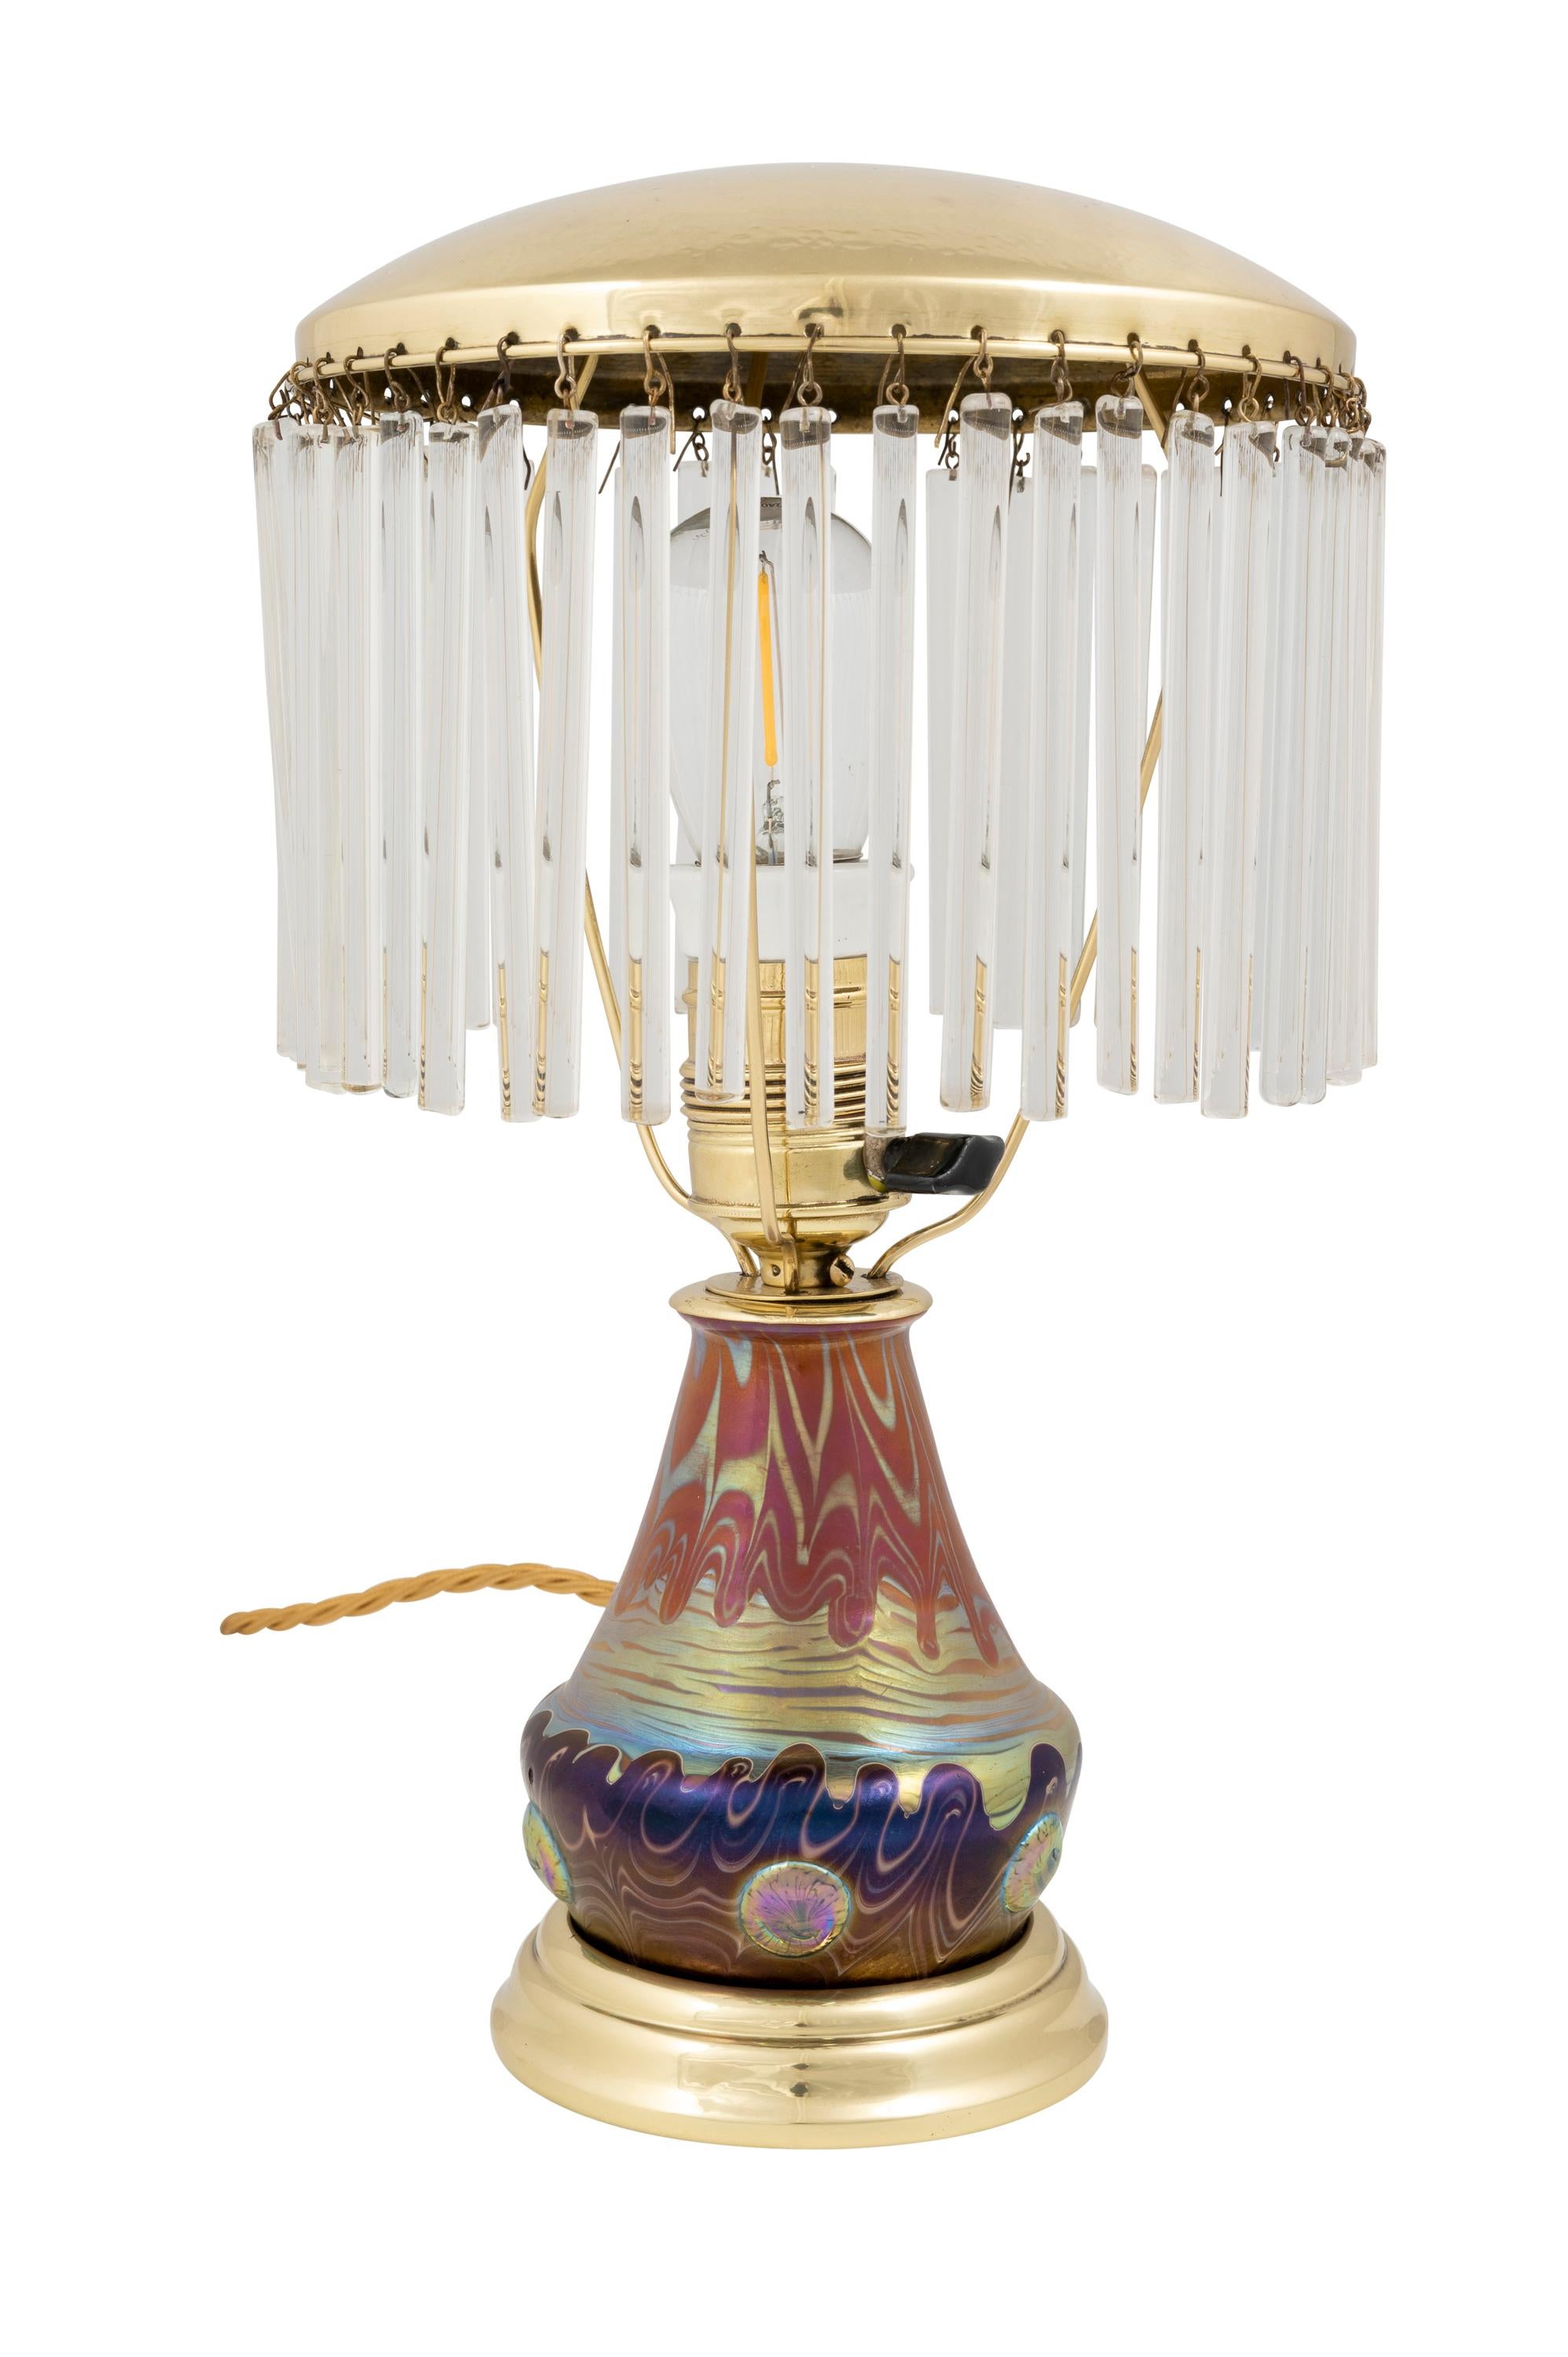 Tischlampe mit Glasstäben, hergestellt von Johann Loetz Witwe, Dekor Phenomen Genre 358, um 1901

Diese Tischleuchte ist ein außergewöhnliches Beispiel für die Designfähigkeit der Manufaktur Loetz. Der Dekor Phenomen Genre 358 ist von der